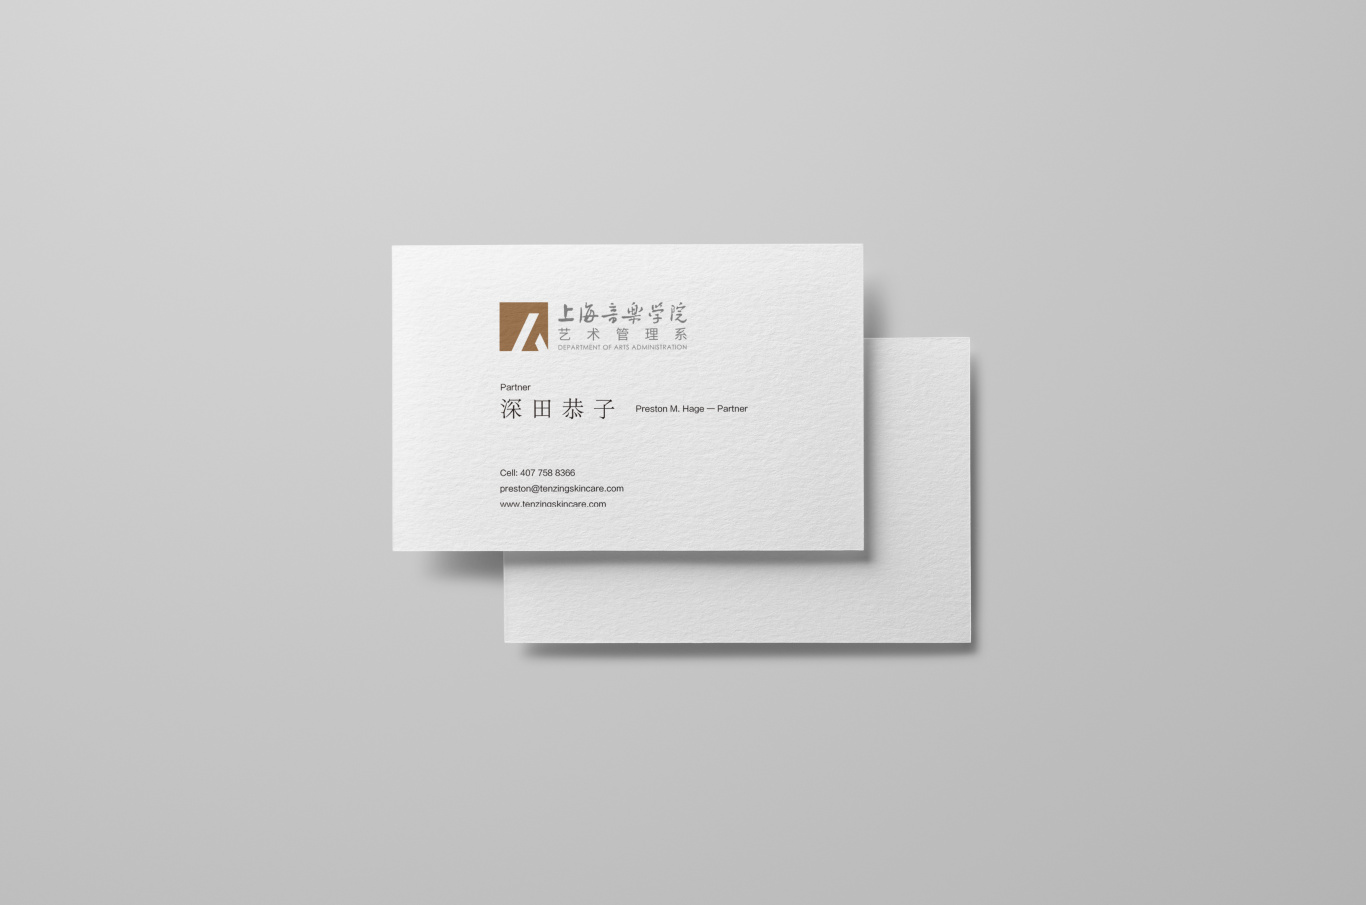 上海音乐学院艺术管理系logo图1